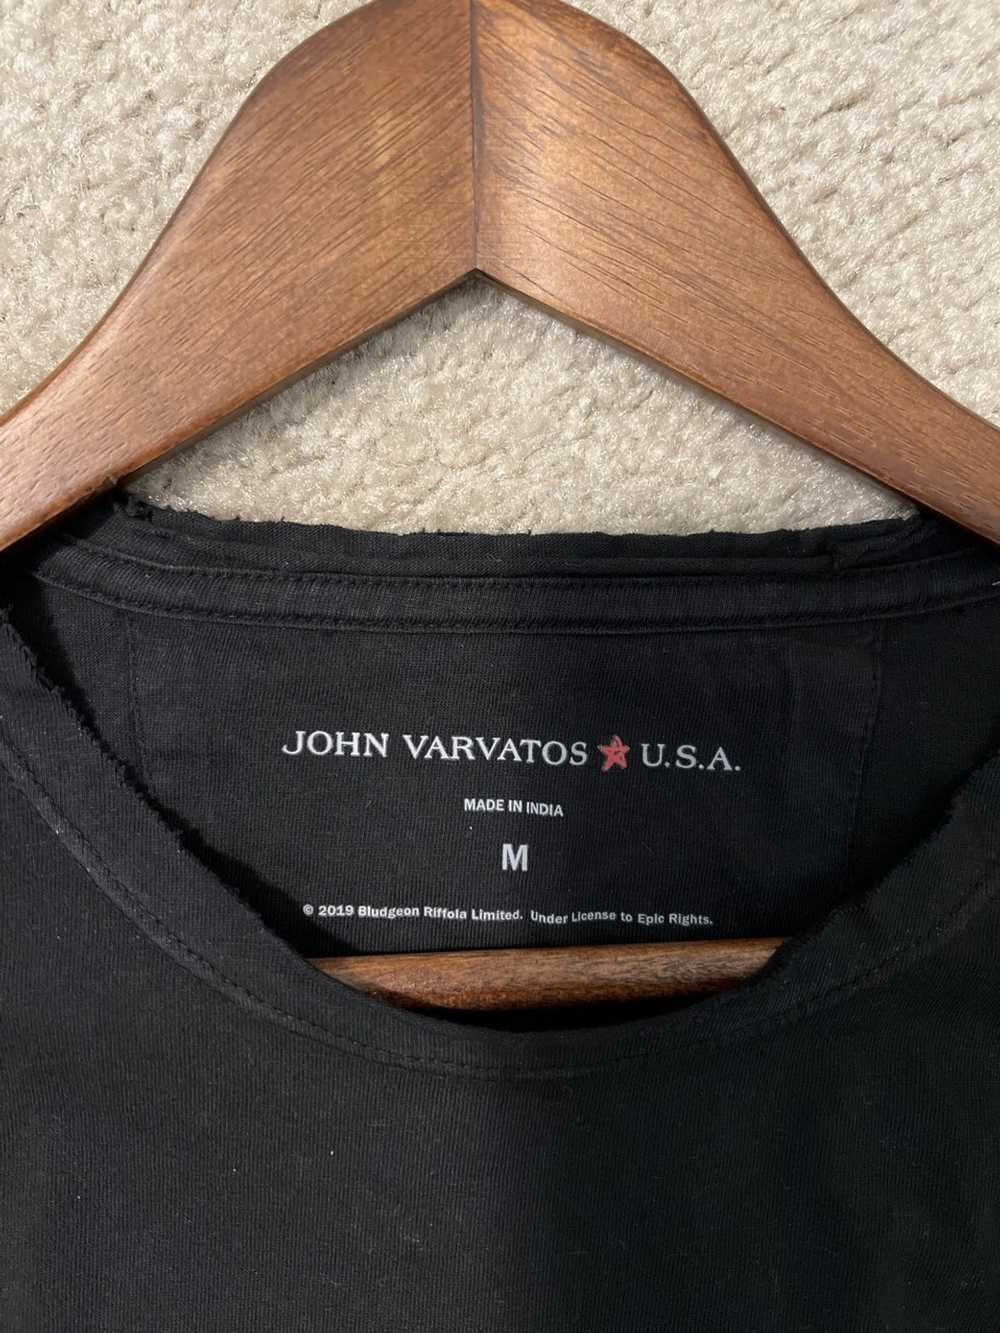 John Varvatos John Varvatos USA X Def Leppard - image 3